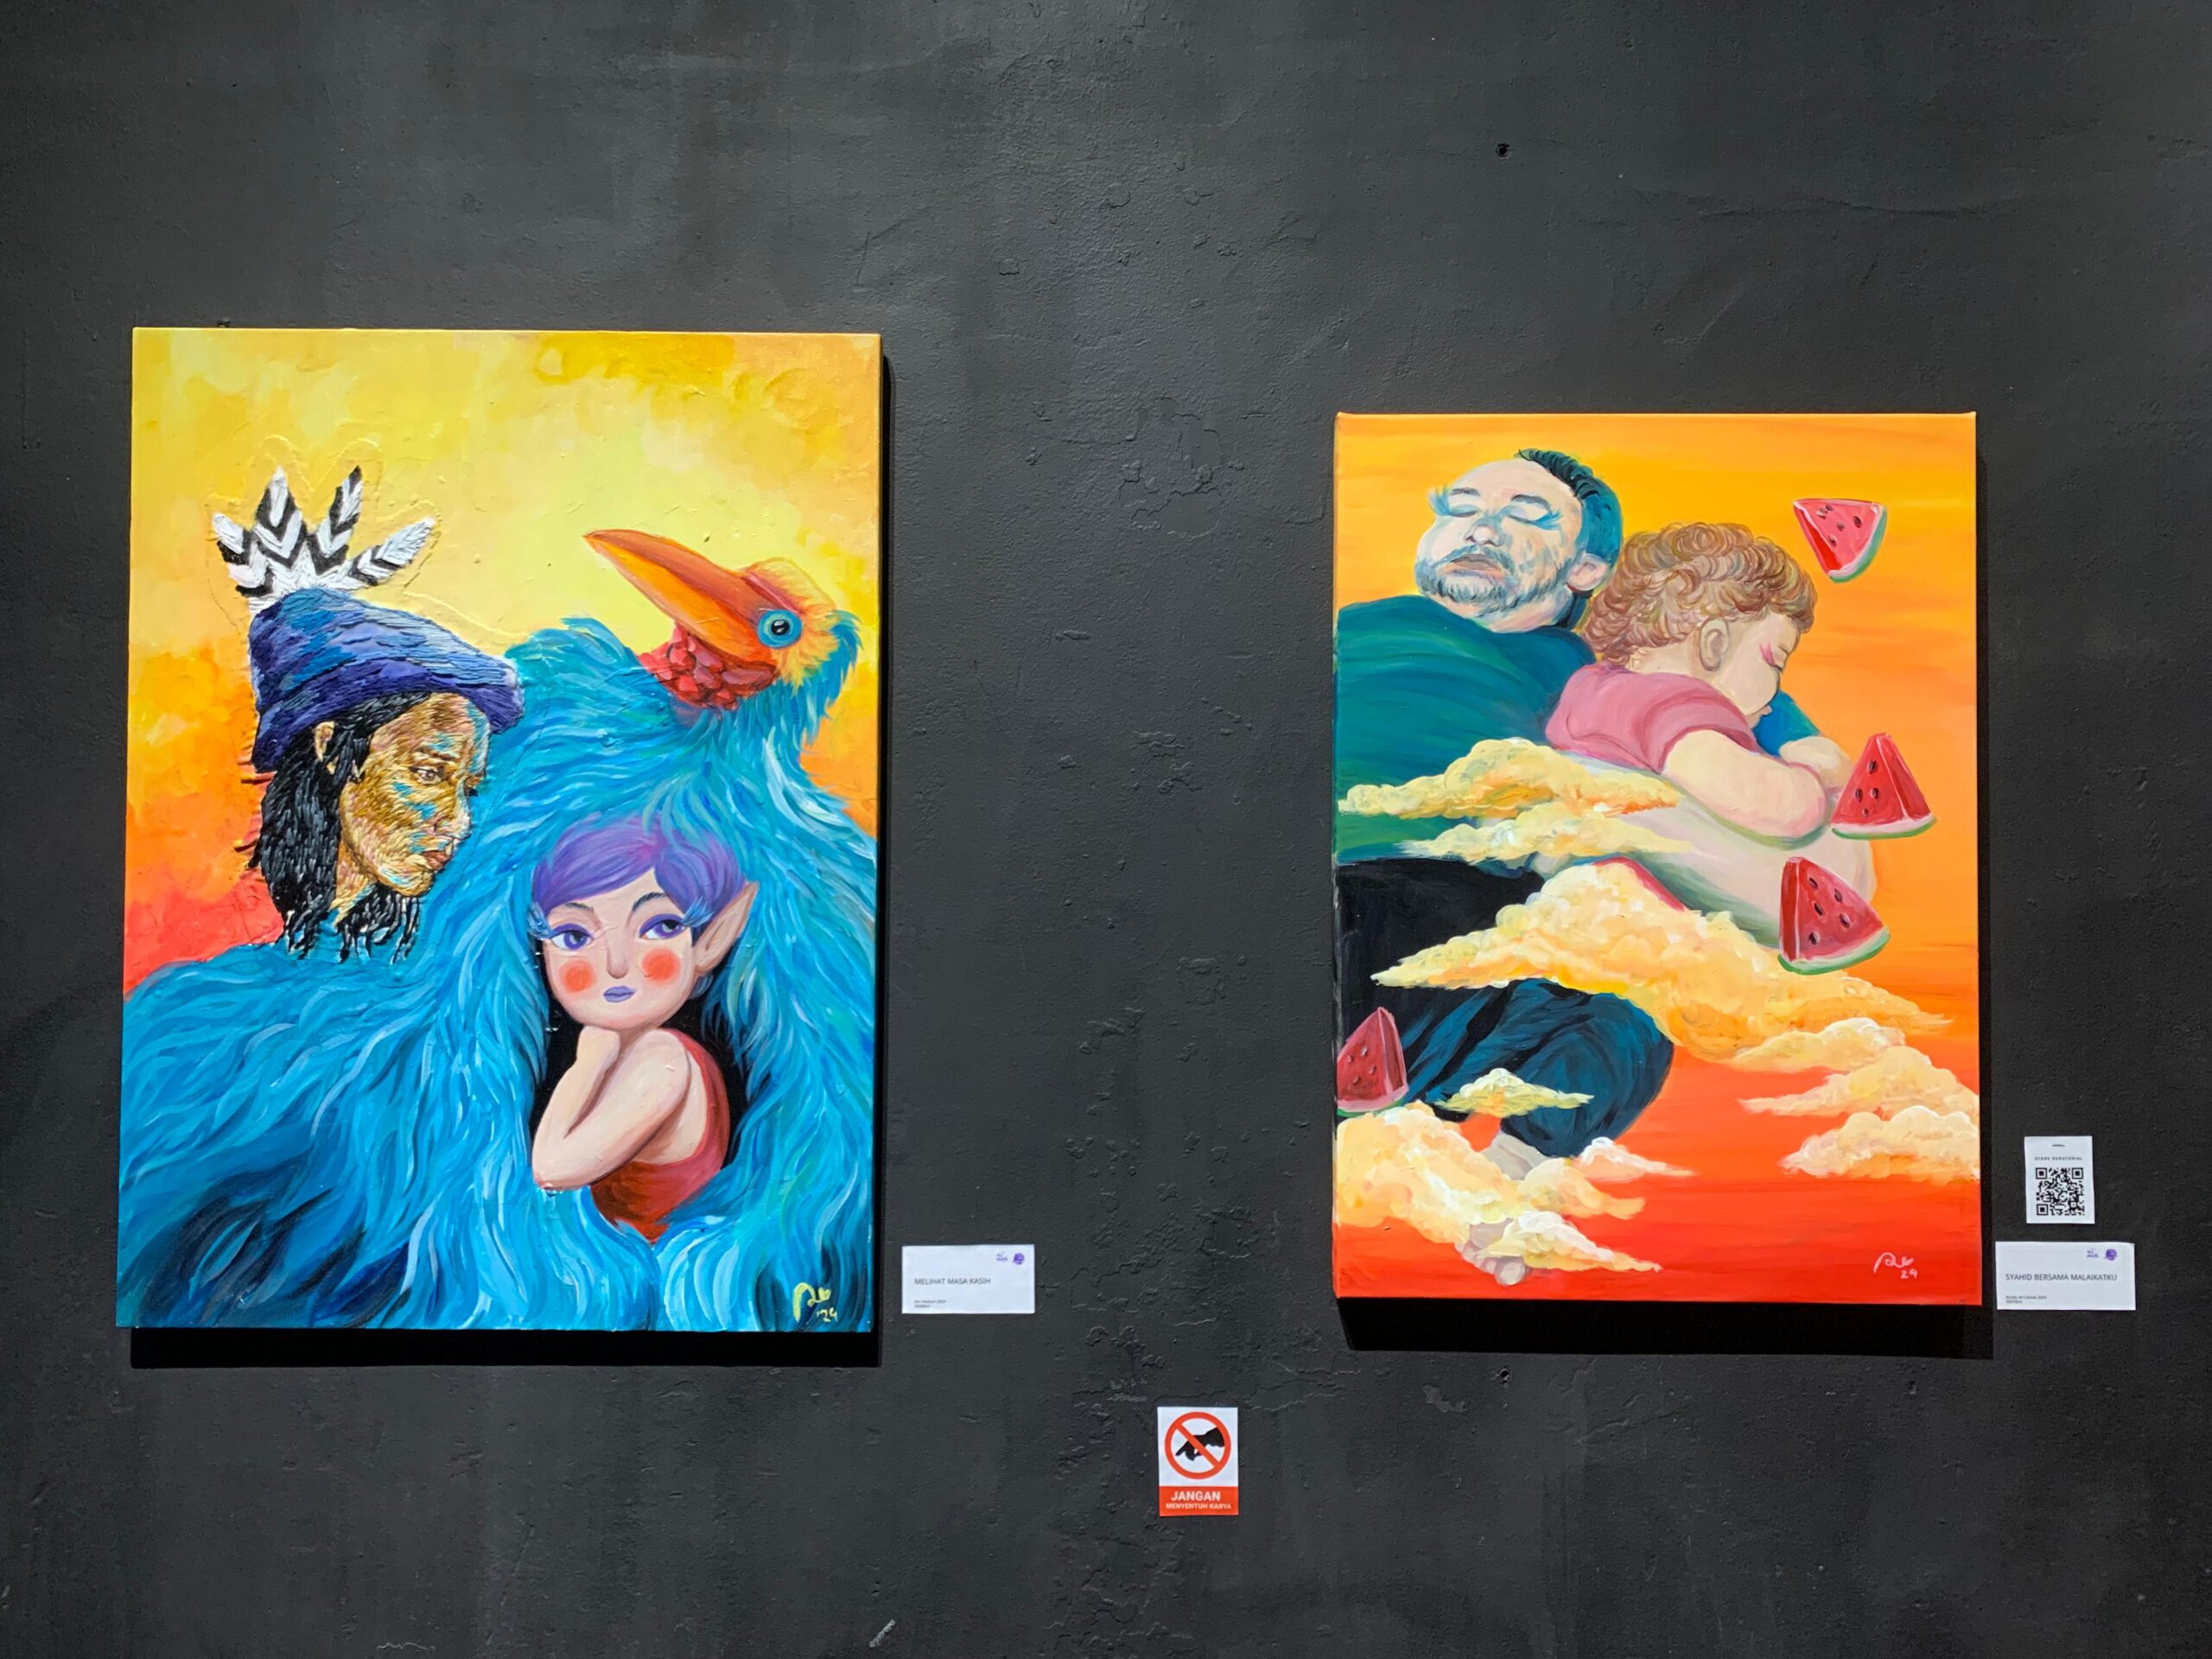 Beberapa karya dari Ayu Murniati di pameran tunggal “Ku Mulai”. (Foto: Indri)